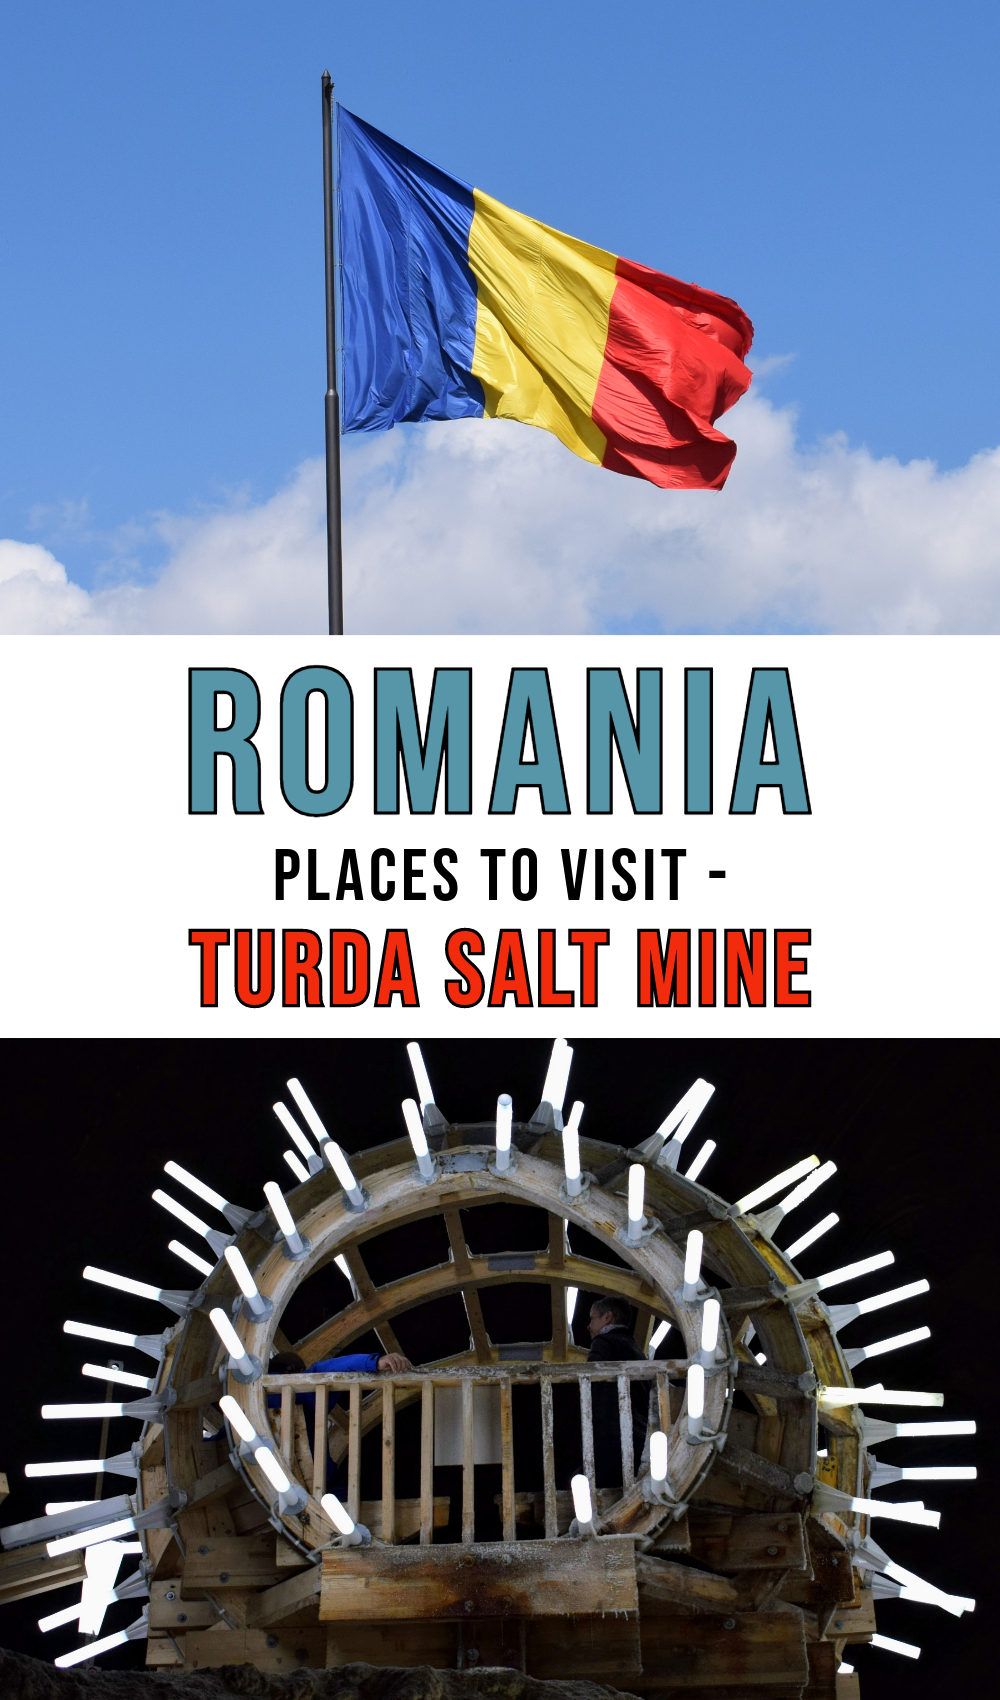 Turda Salt Mine Pinterest